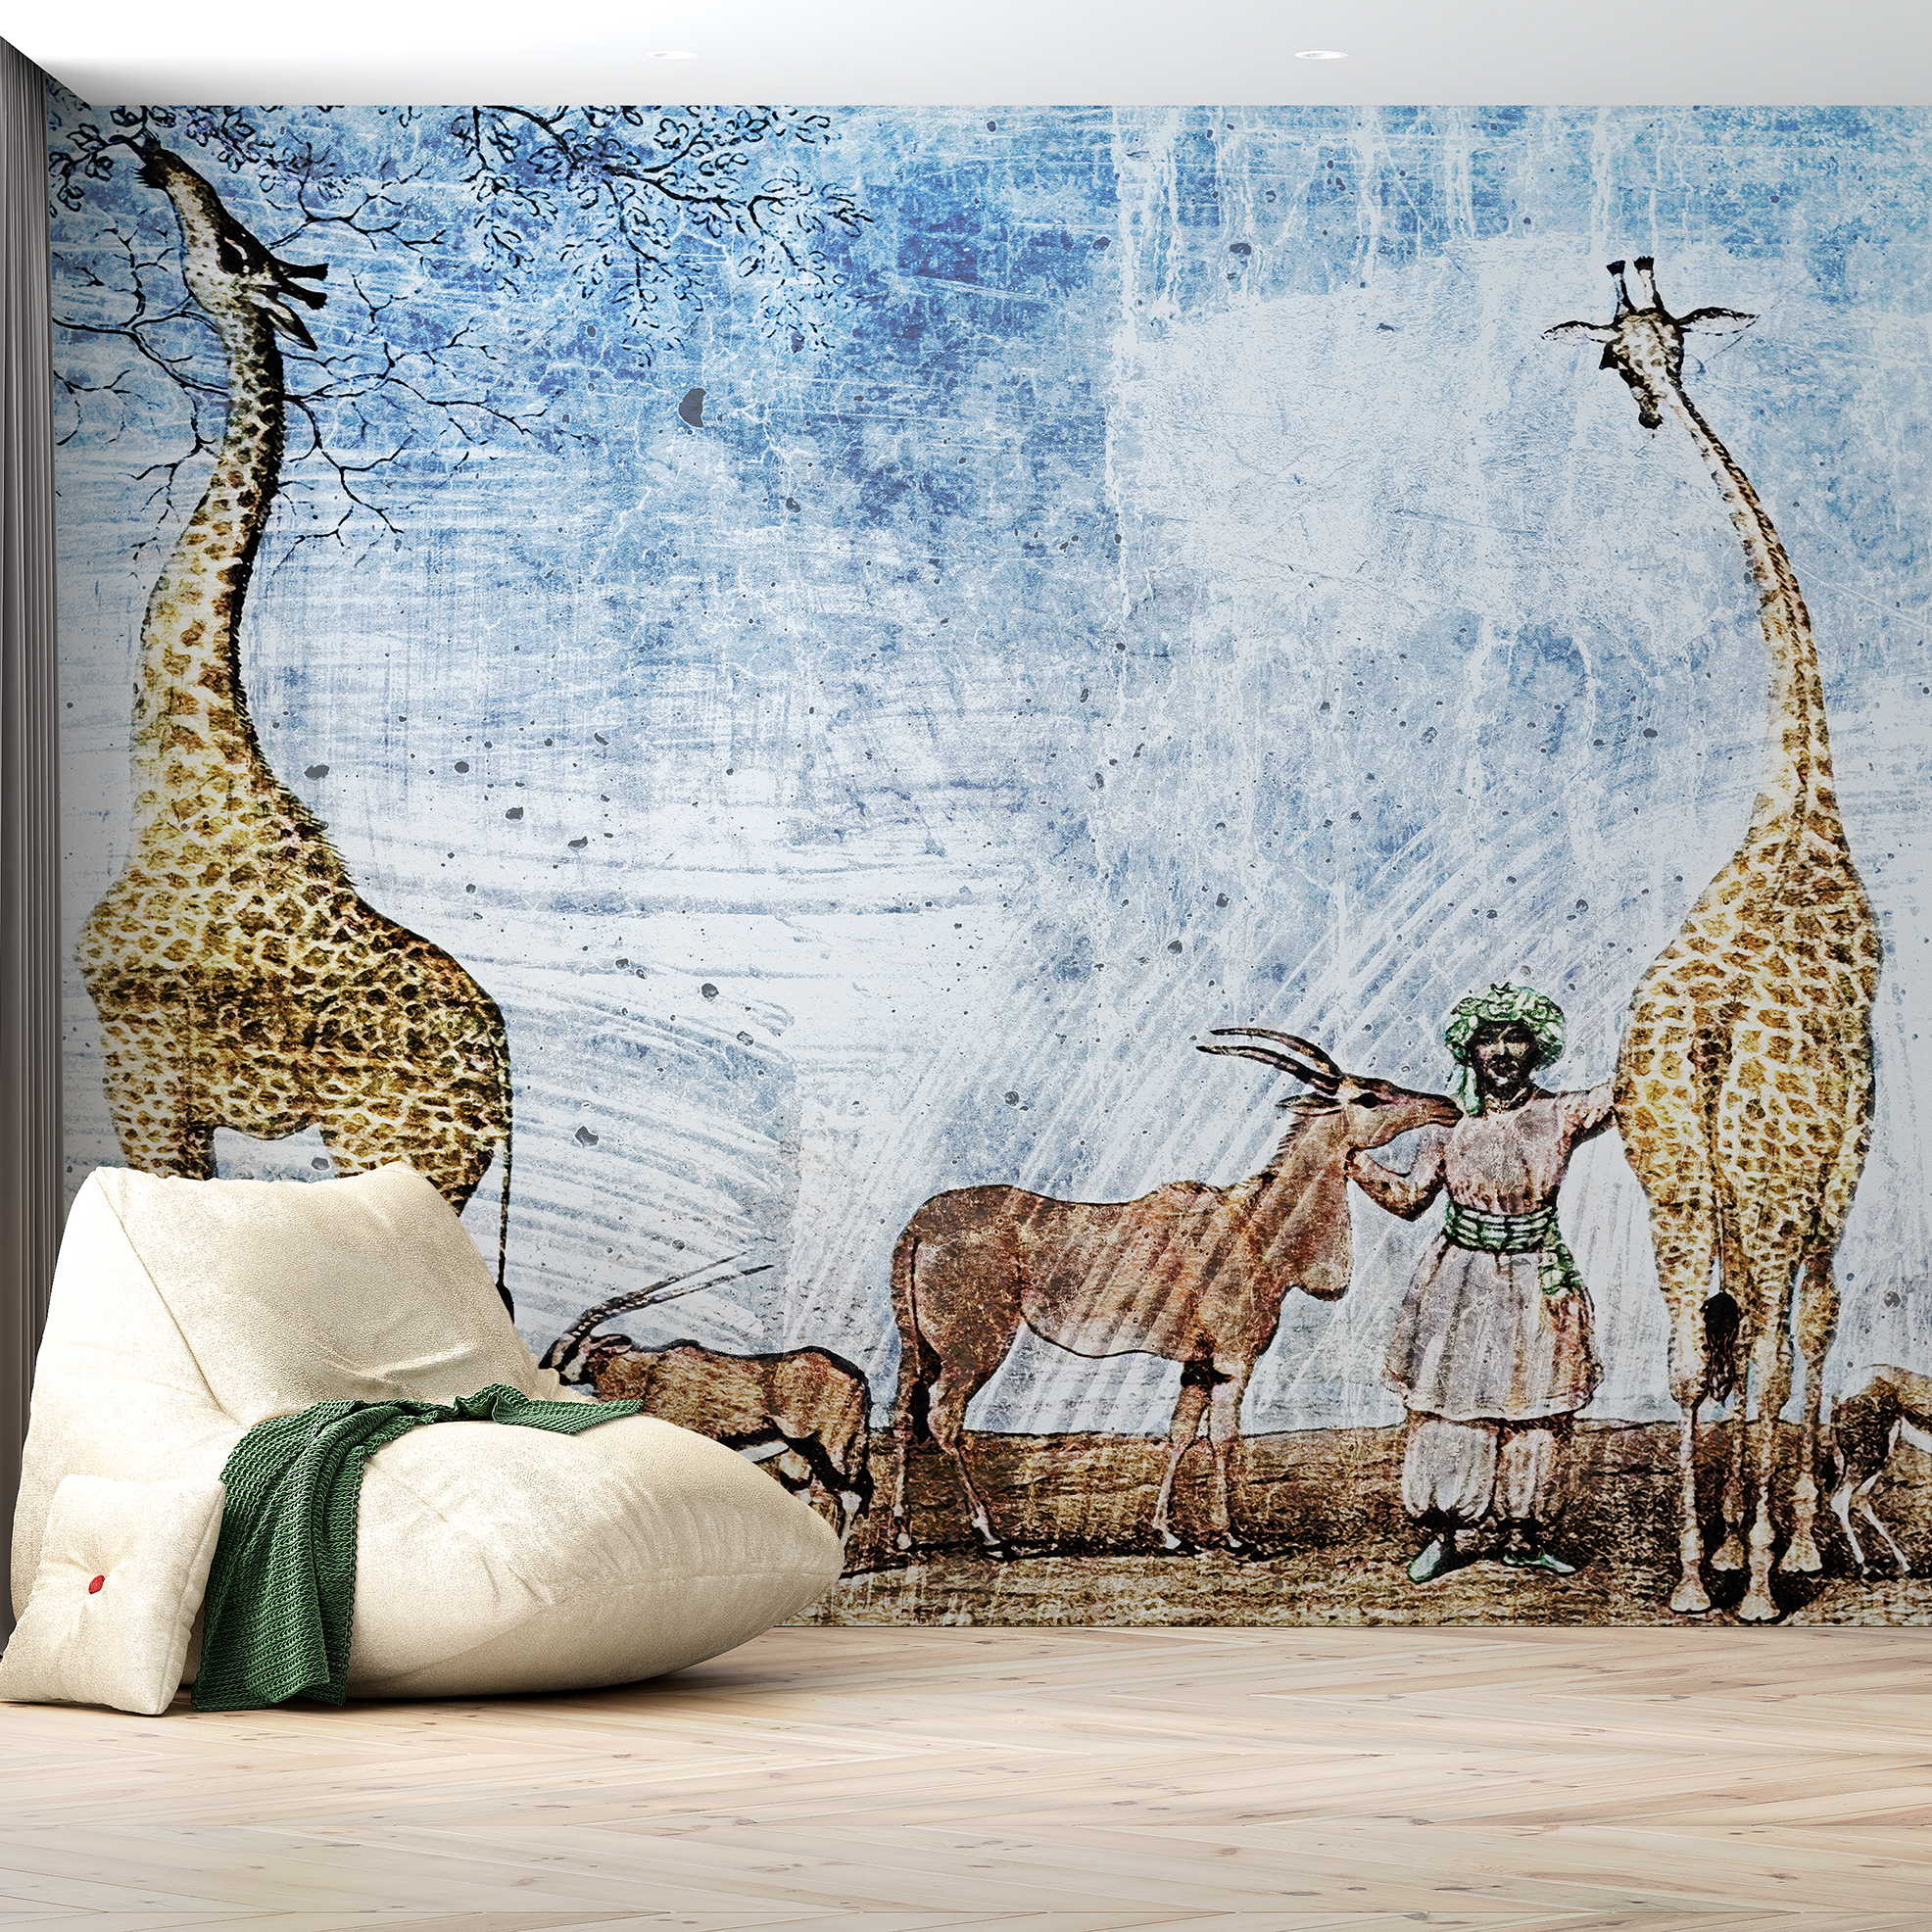 Auf einem beachtlichen Format von 270 x 420cm laden sie den afrikanischen Kontinent bei sich zu Hause ein. Wohngesunde Herstellung trifft auf Ästhetik 